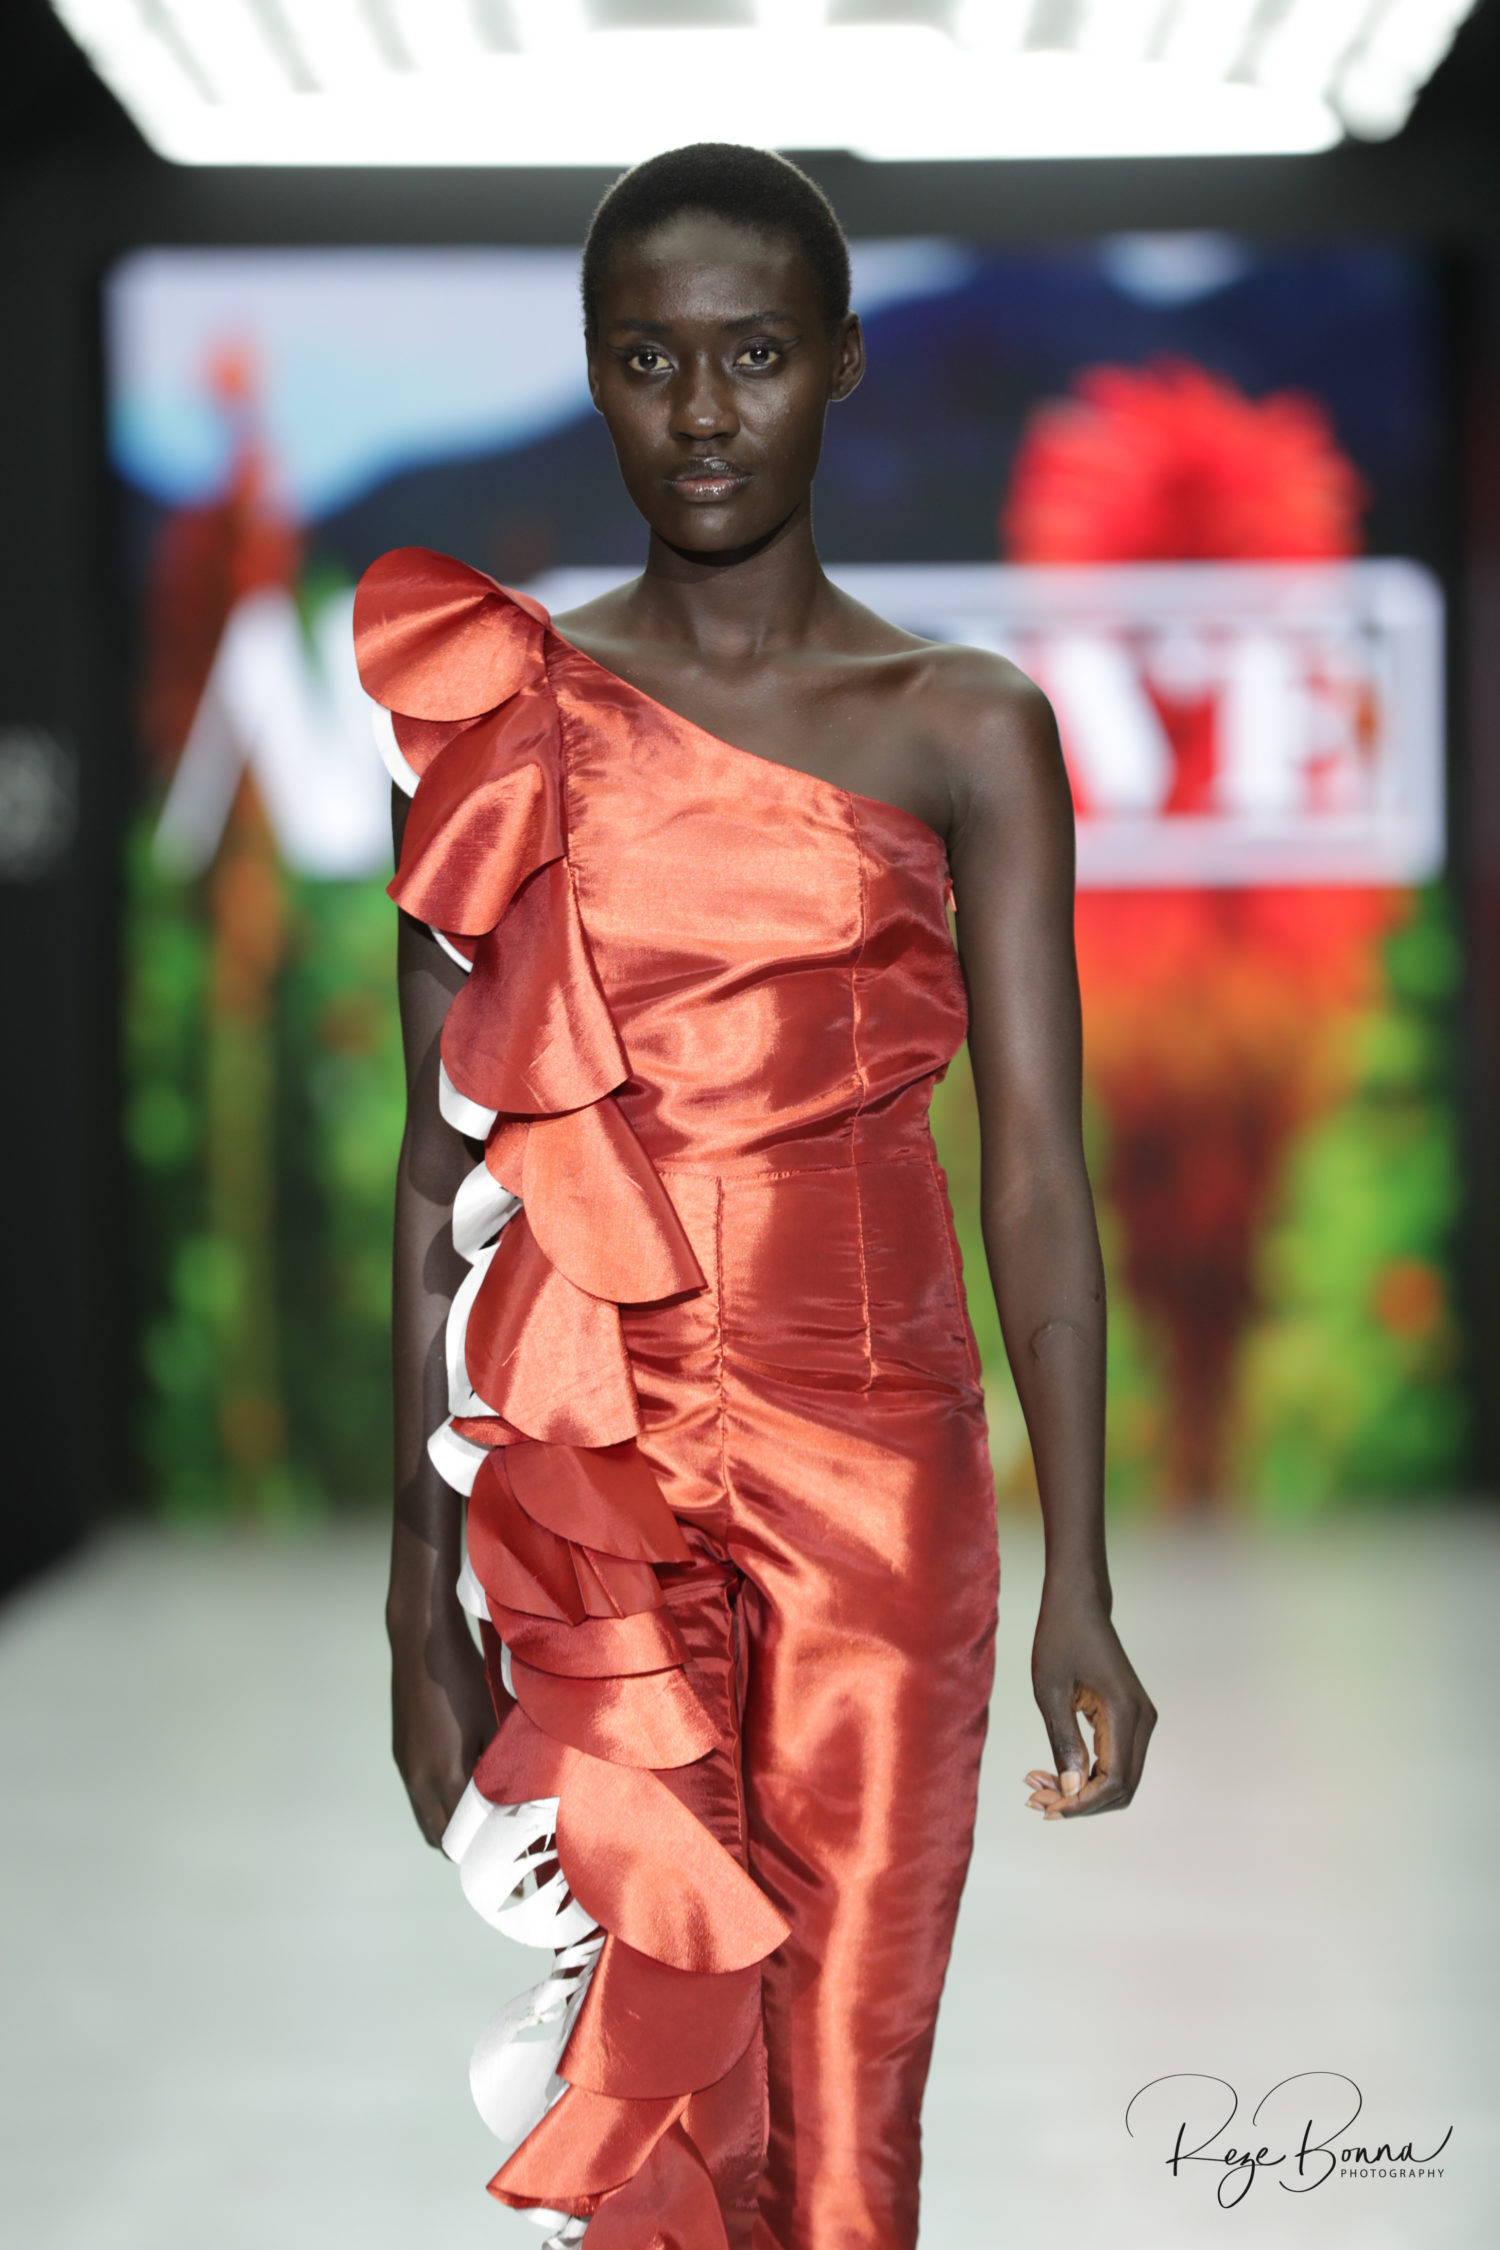 #AFICTFW19 | AFI Capetown Fashion Week AFI Prive